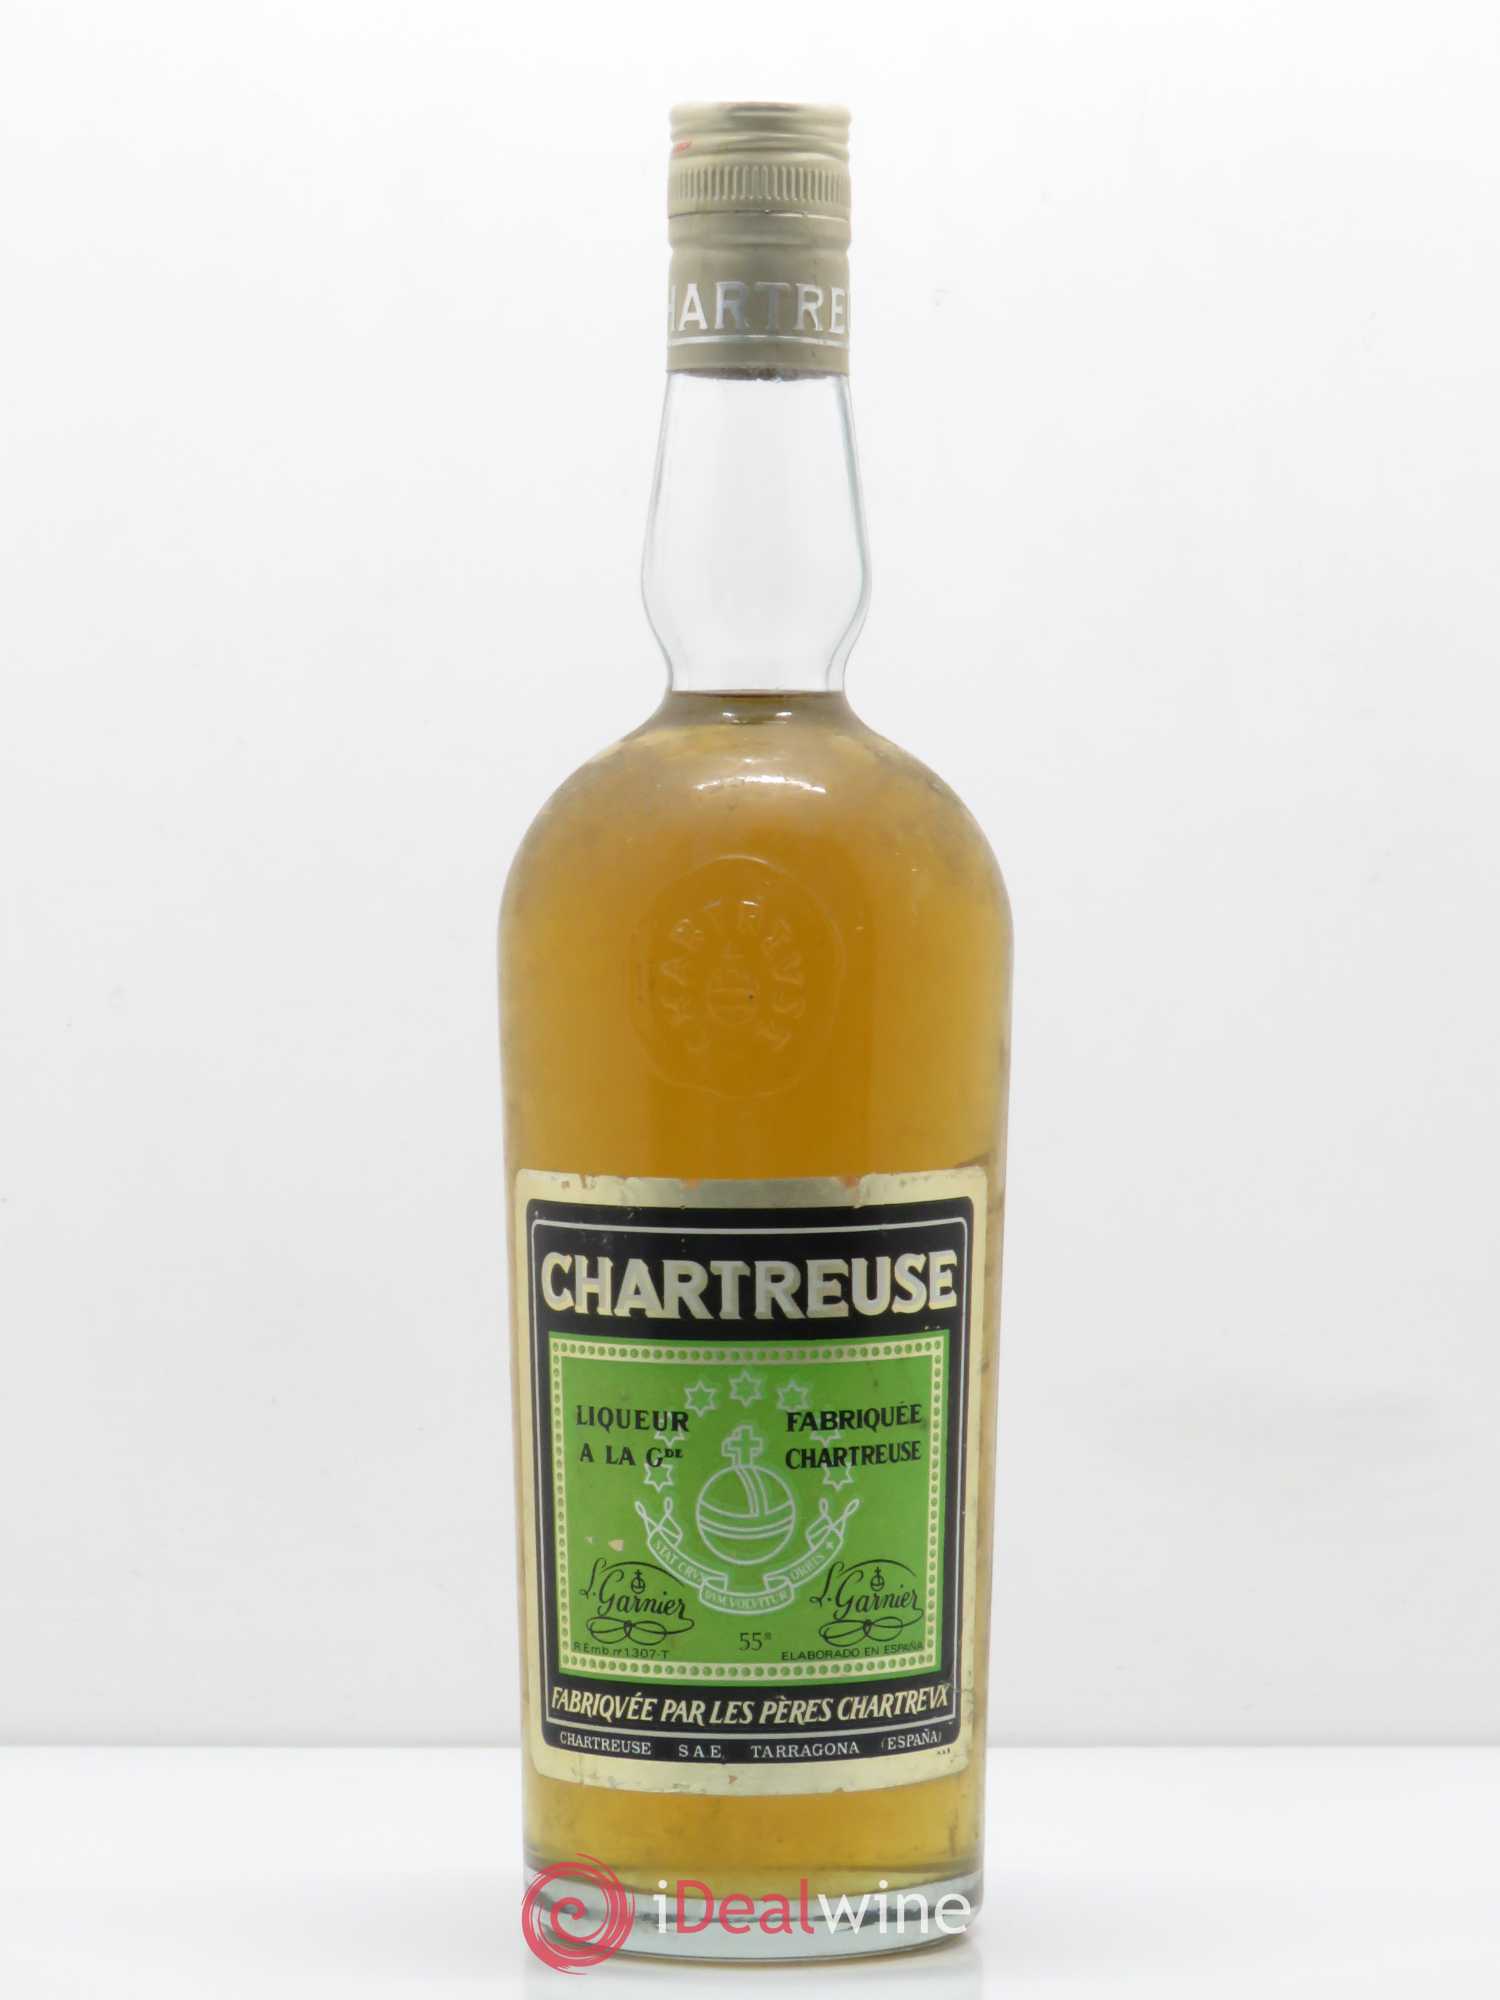 Chartreuse Verte “Tarragone” Période 1973-1985 – 1870 Vins et Conseils